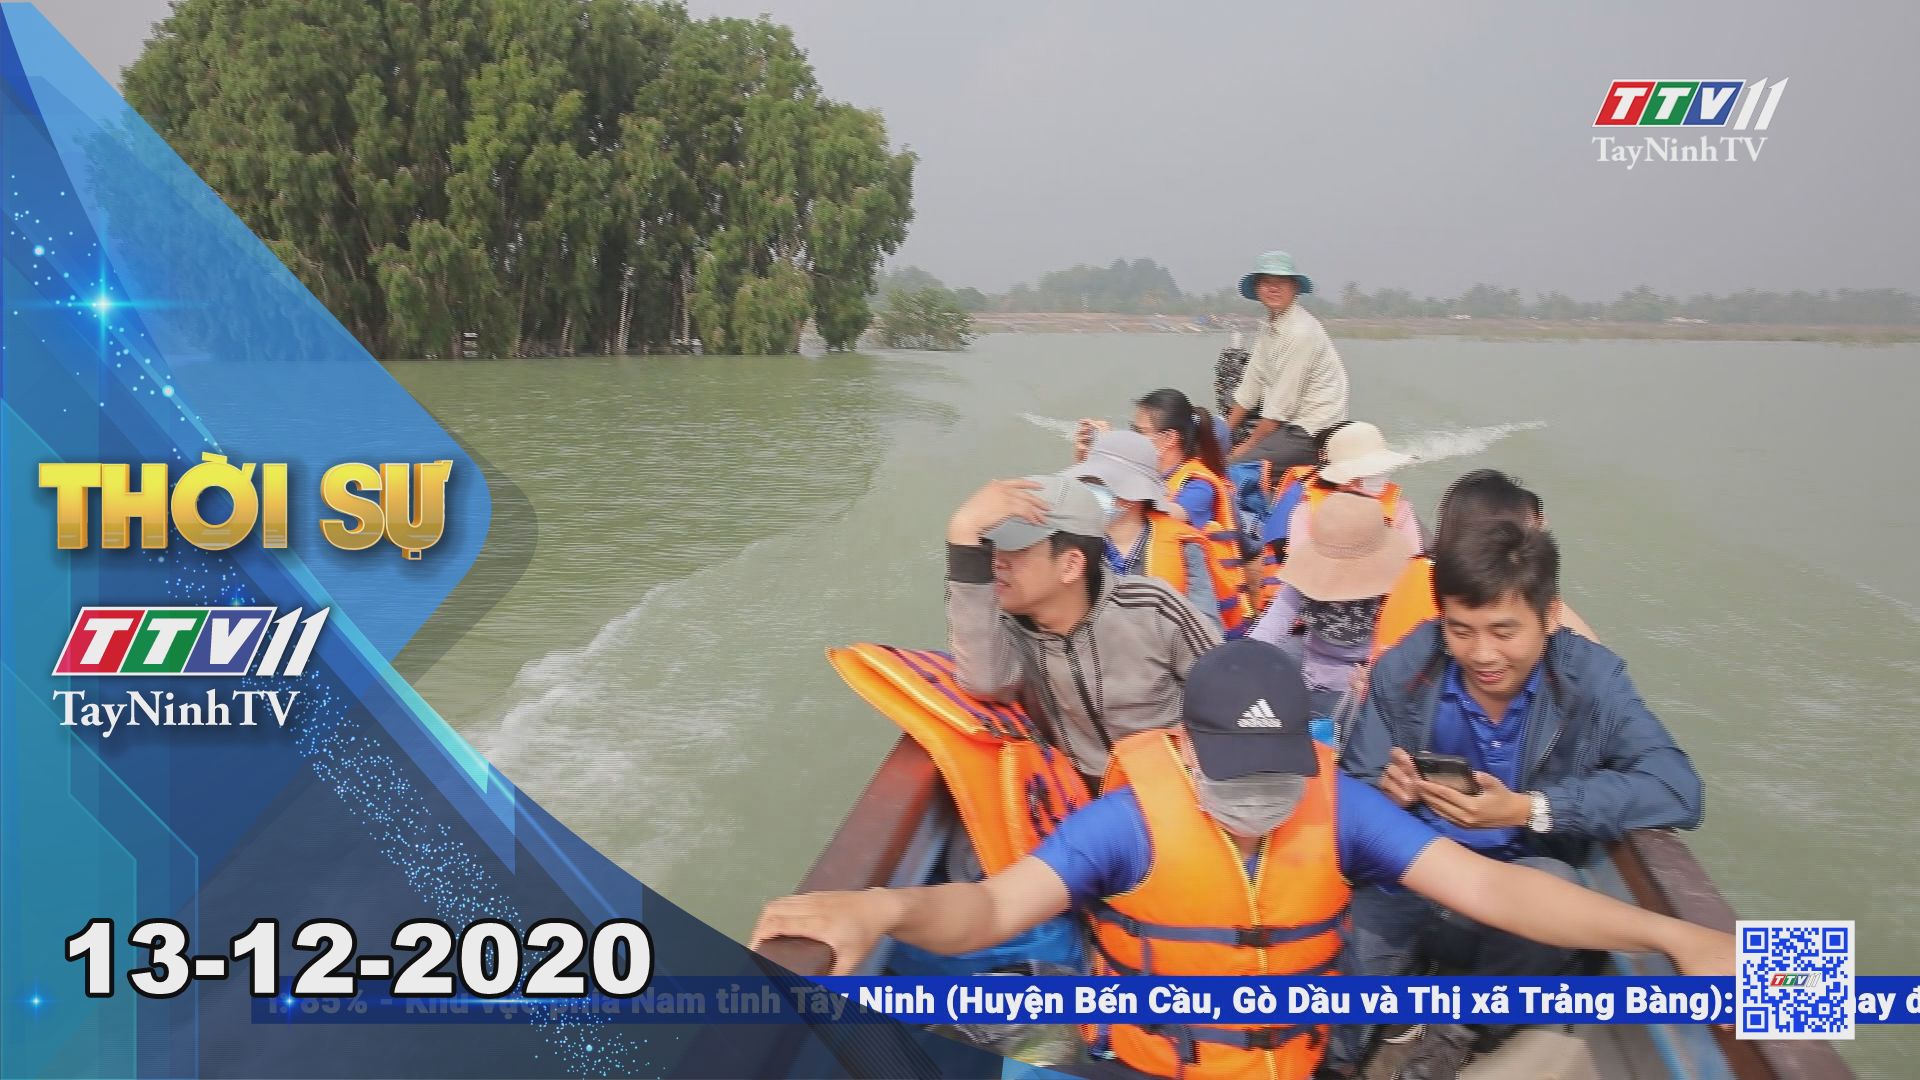 Thời sự Tây Ninh 13-12-2020 | Tin tức hôm nay | TayNinhTV 